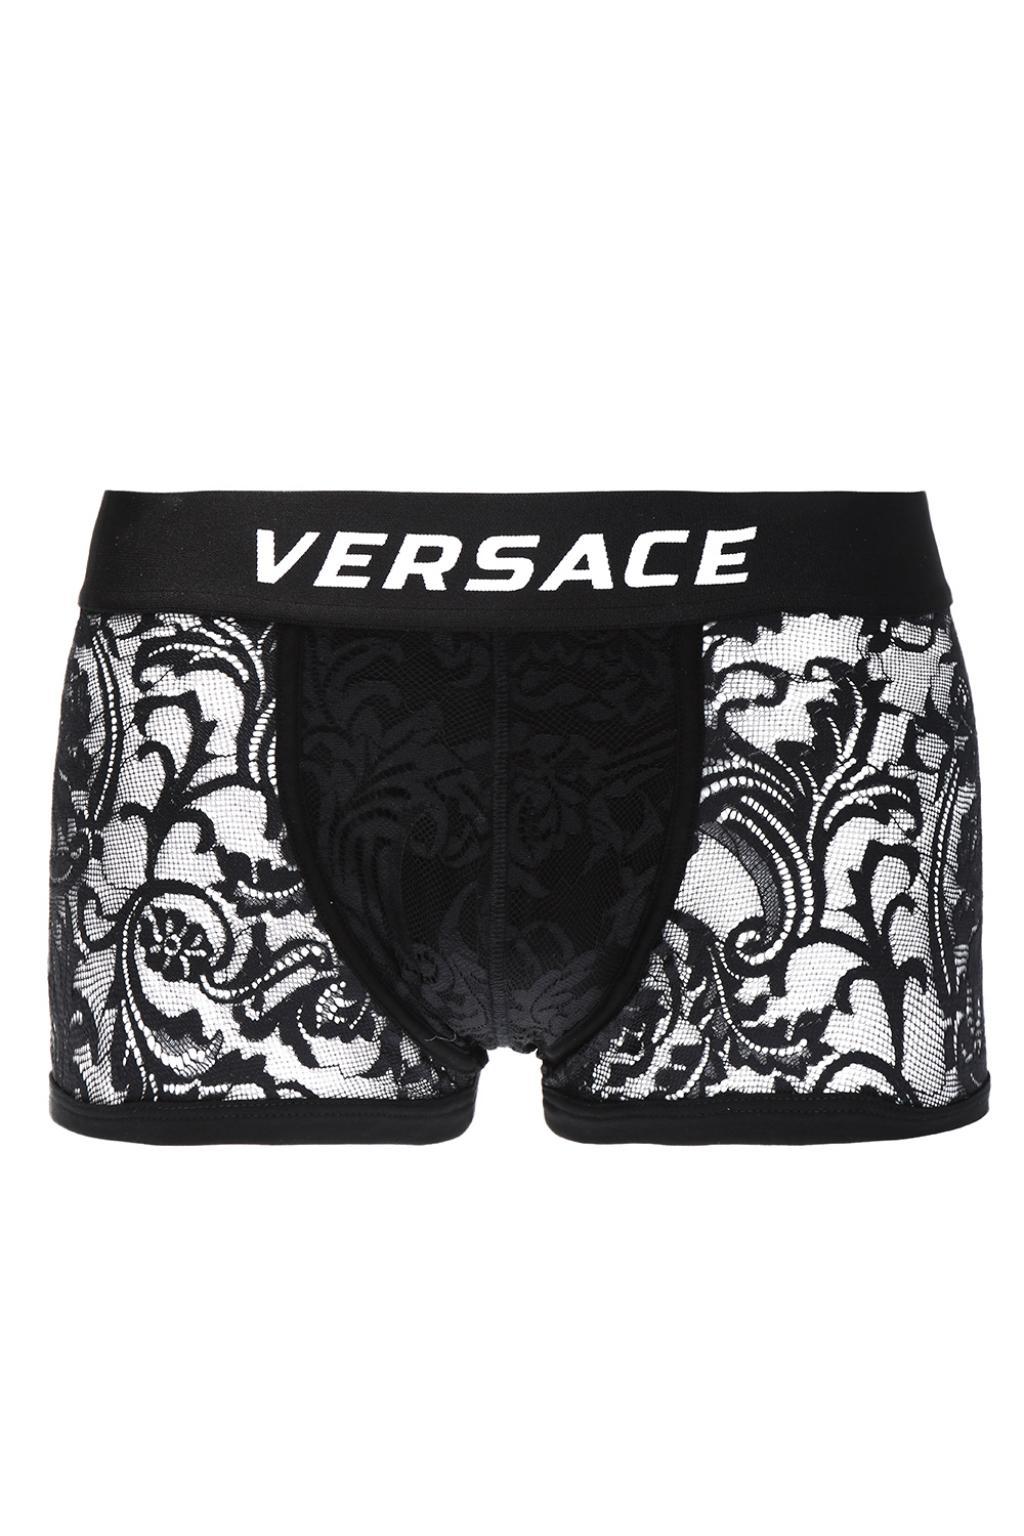 versace lace boxers, OFF 70%,Best Deals 